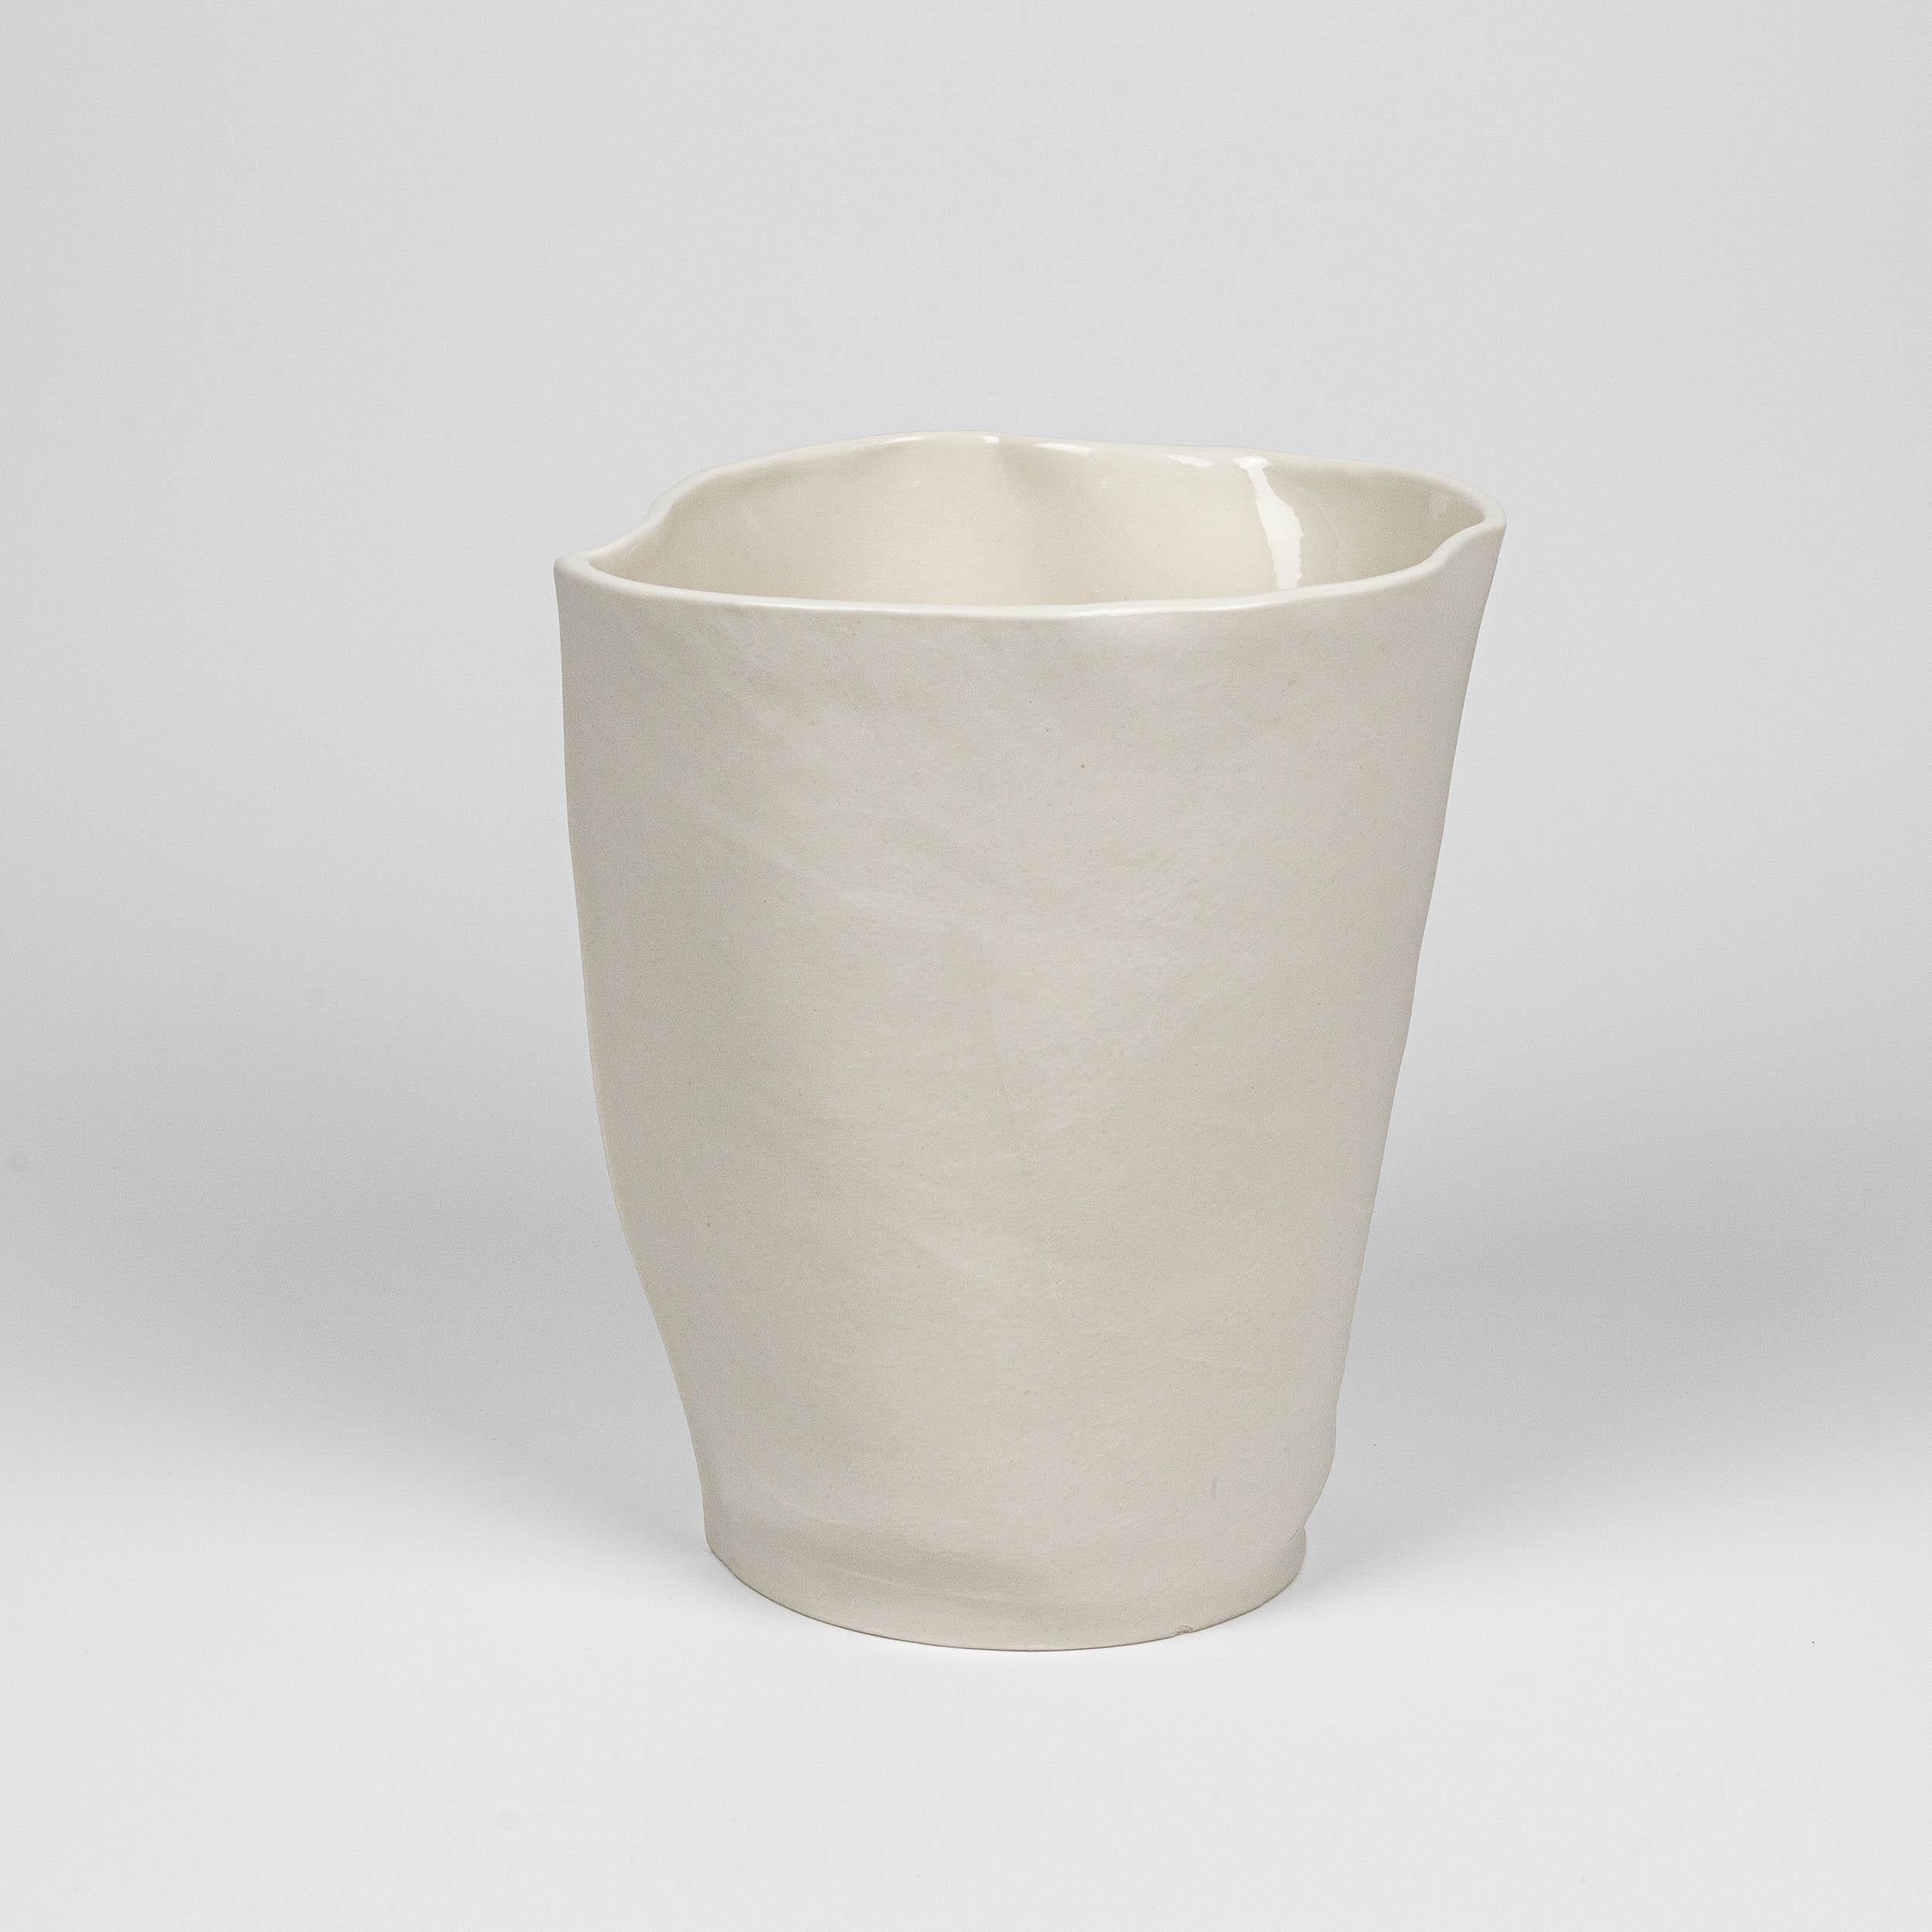 Ein Porzellangefäß mit stoffähnlicher Form und Ledertextur, das durch Gießen von flüssigem Porzellan in genähte Lederformen hergestellt wird. Klare Glasur auf der Innenfläche. Aufgrund des Herstellungsprozesses ist jede Vase ein Unikat.